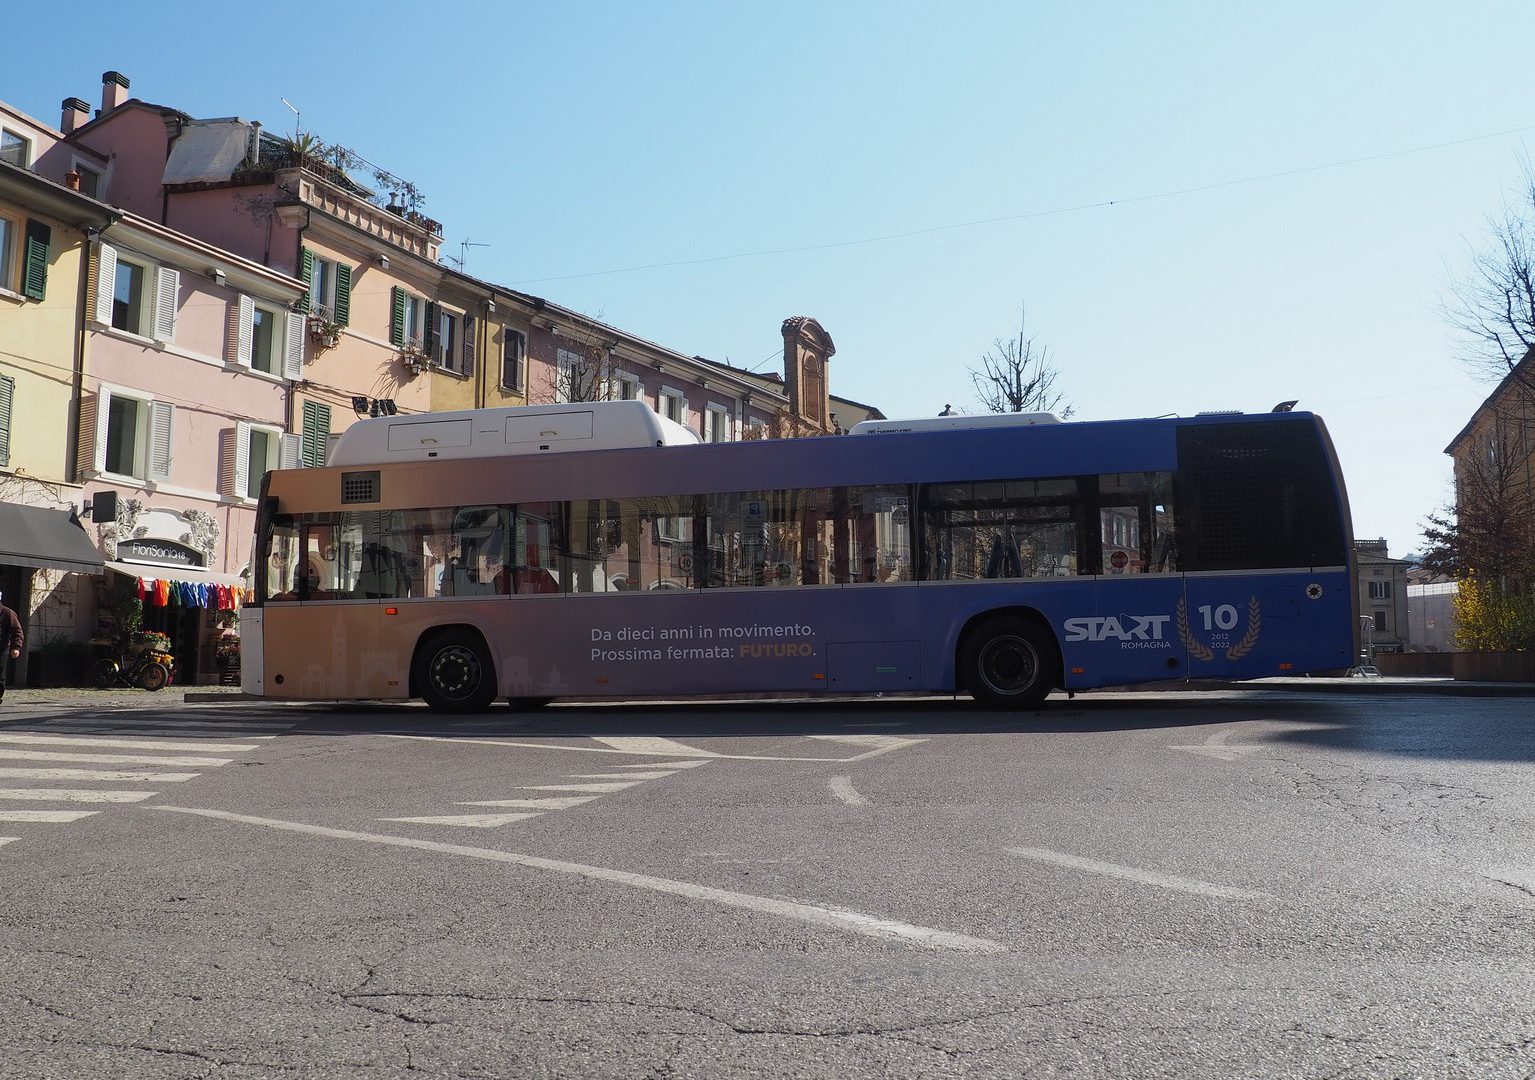 Start Romagna bus